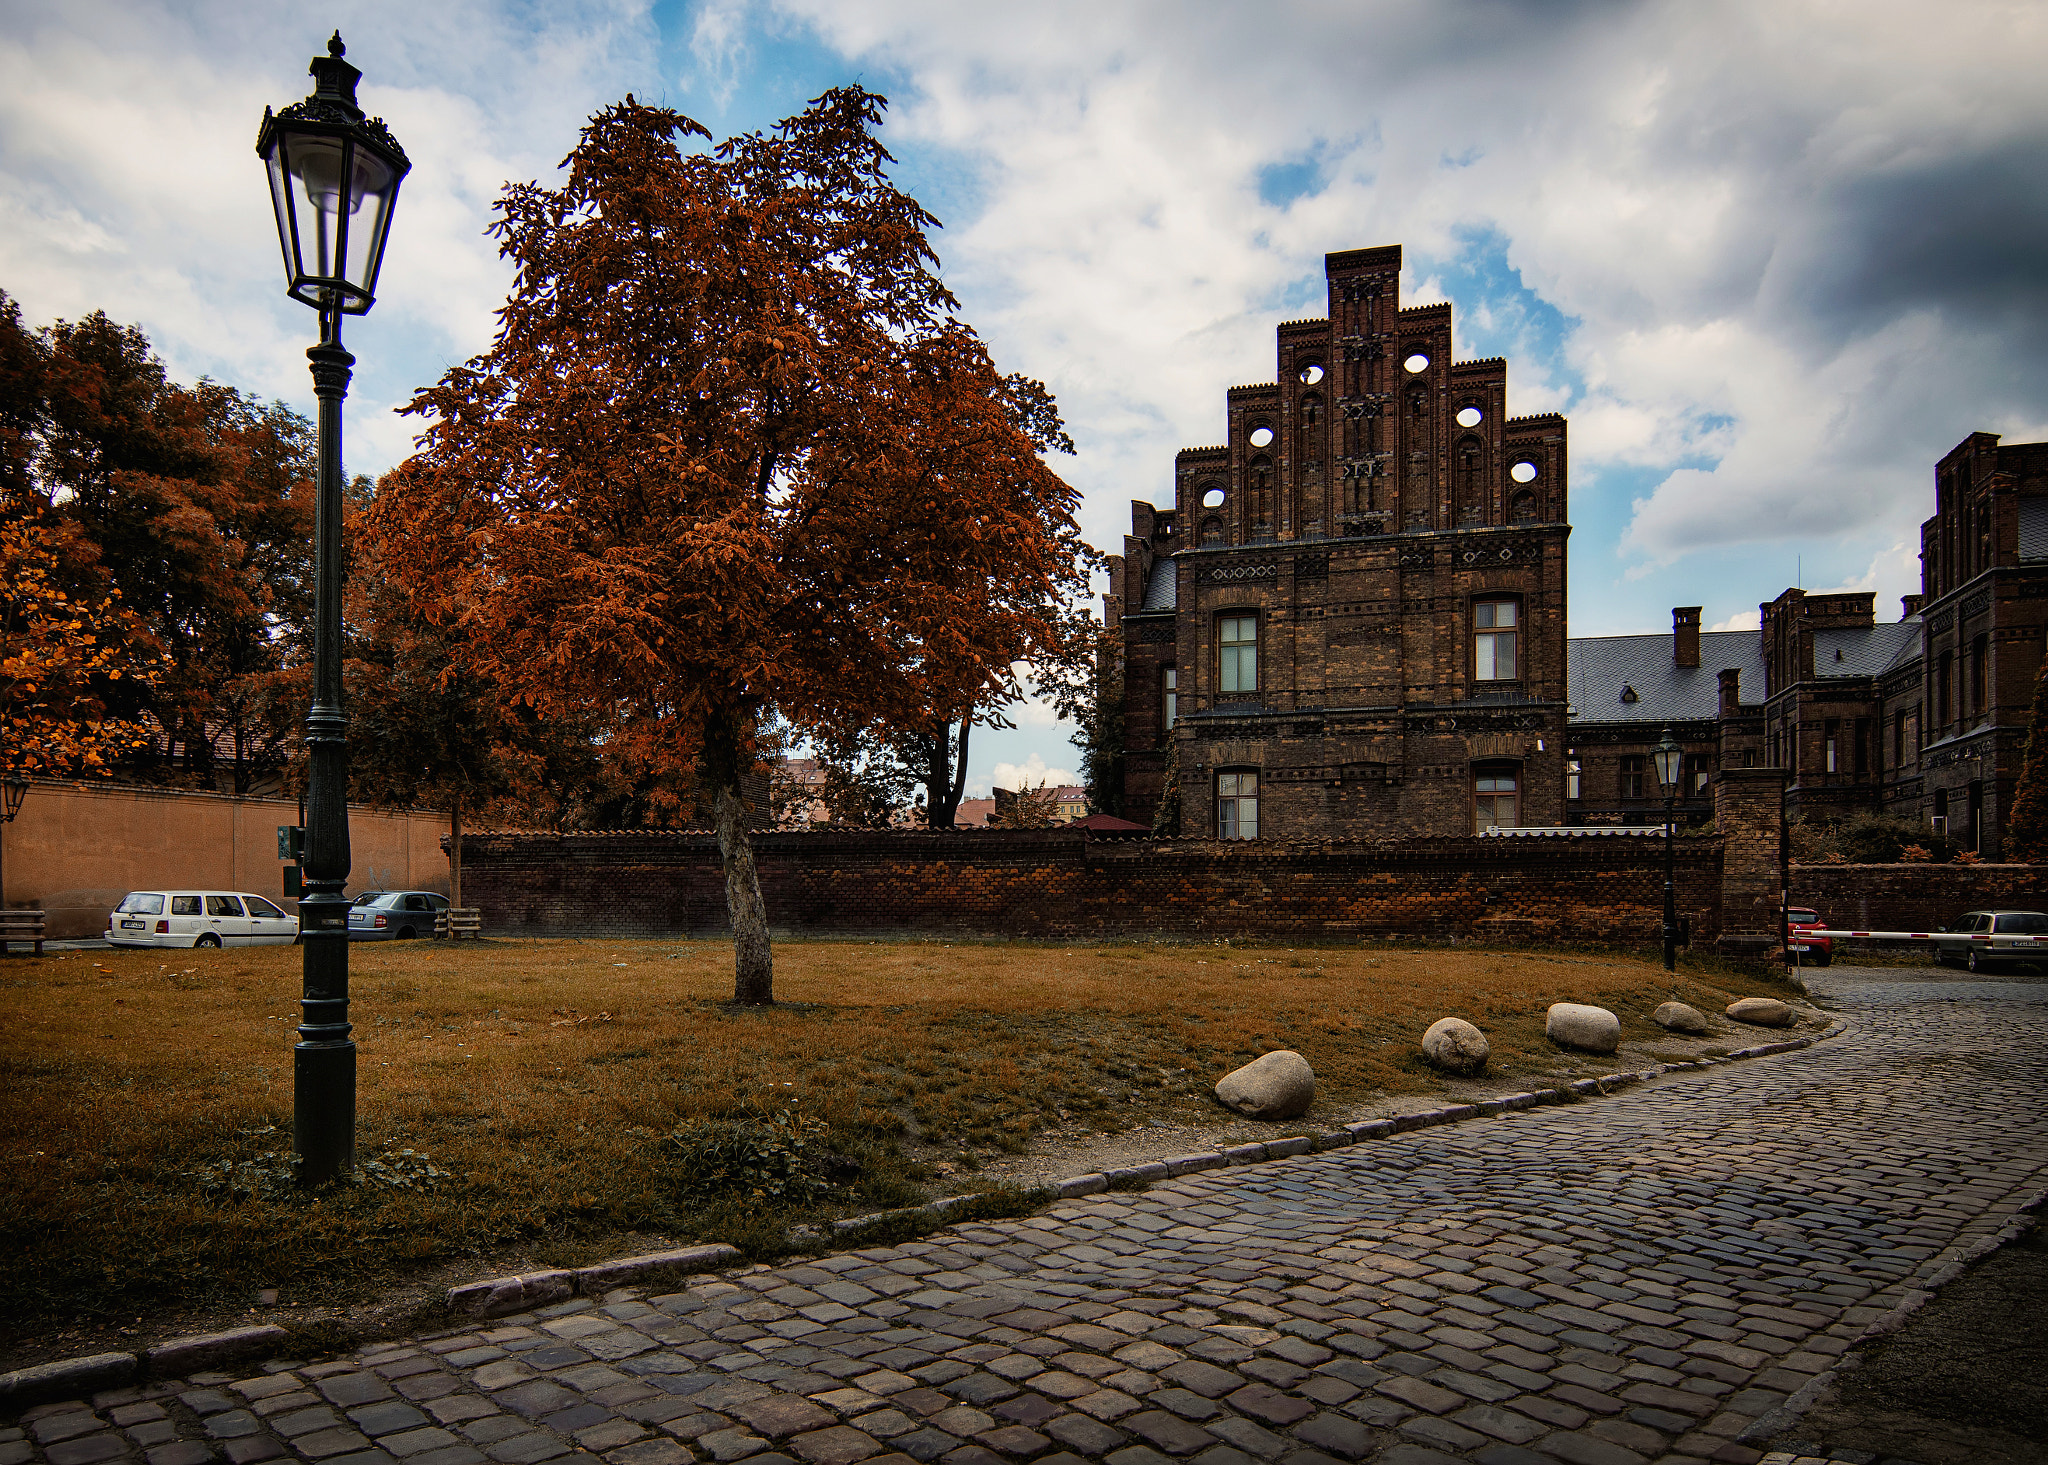 Sony SLT-A77 sample photo. Prague autumn iii photography